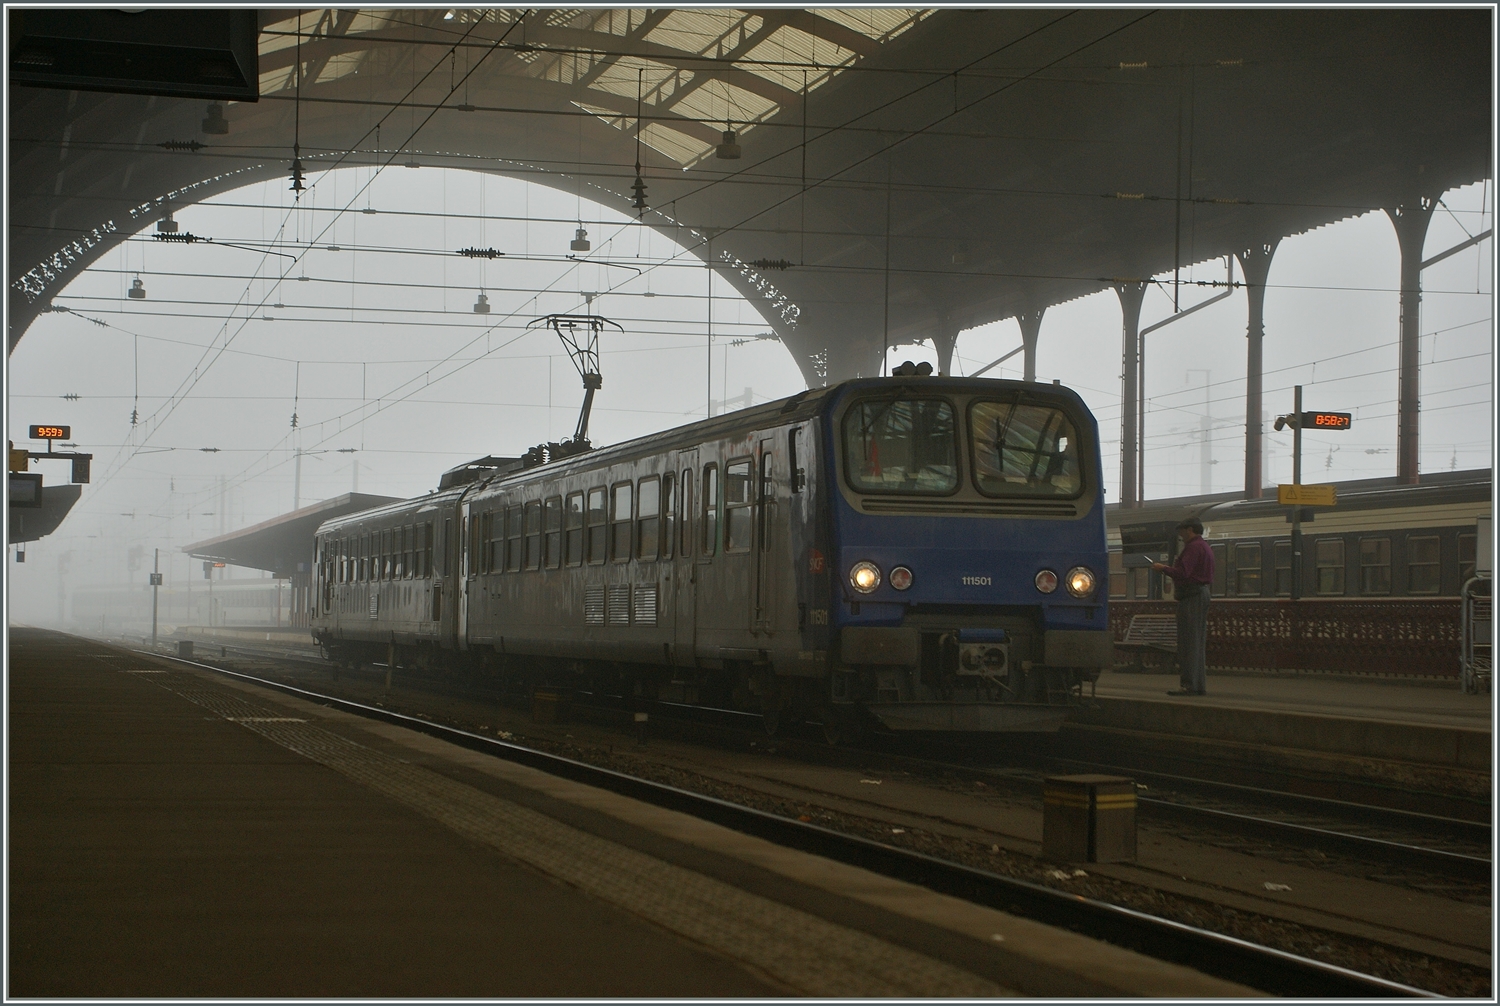 An einem nebligen Morgen steht der SNCF Z2 11501 in Strasbourg alleine in der grossen Halle und wartet auf die baldige Abfahrt. Dem Bild fehlt jegliche helle ode aufdringliche Farbe, Details liegen im Nebel verborgen und es war gerade die Stimmung dieses Bildes, die mich bewog, die heutigen sechs Fotos hochzuladen.
Möge die Fotografie der etwas andern Art dem einen oder anderen Zeit und Ruhe zu geben in die verschiedenen Stimmung der Bilder einzutauchen.

29. Oktober2011